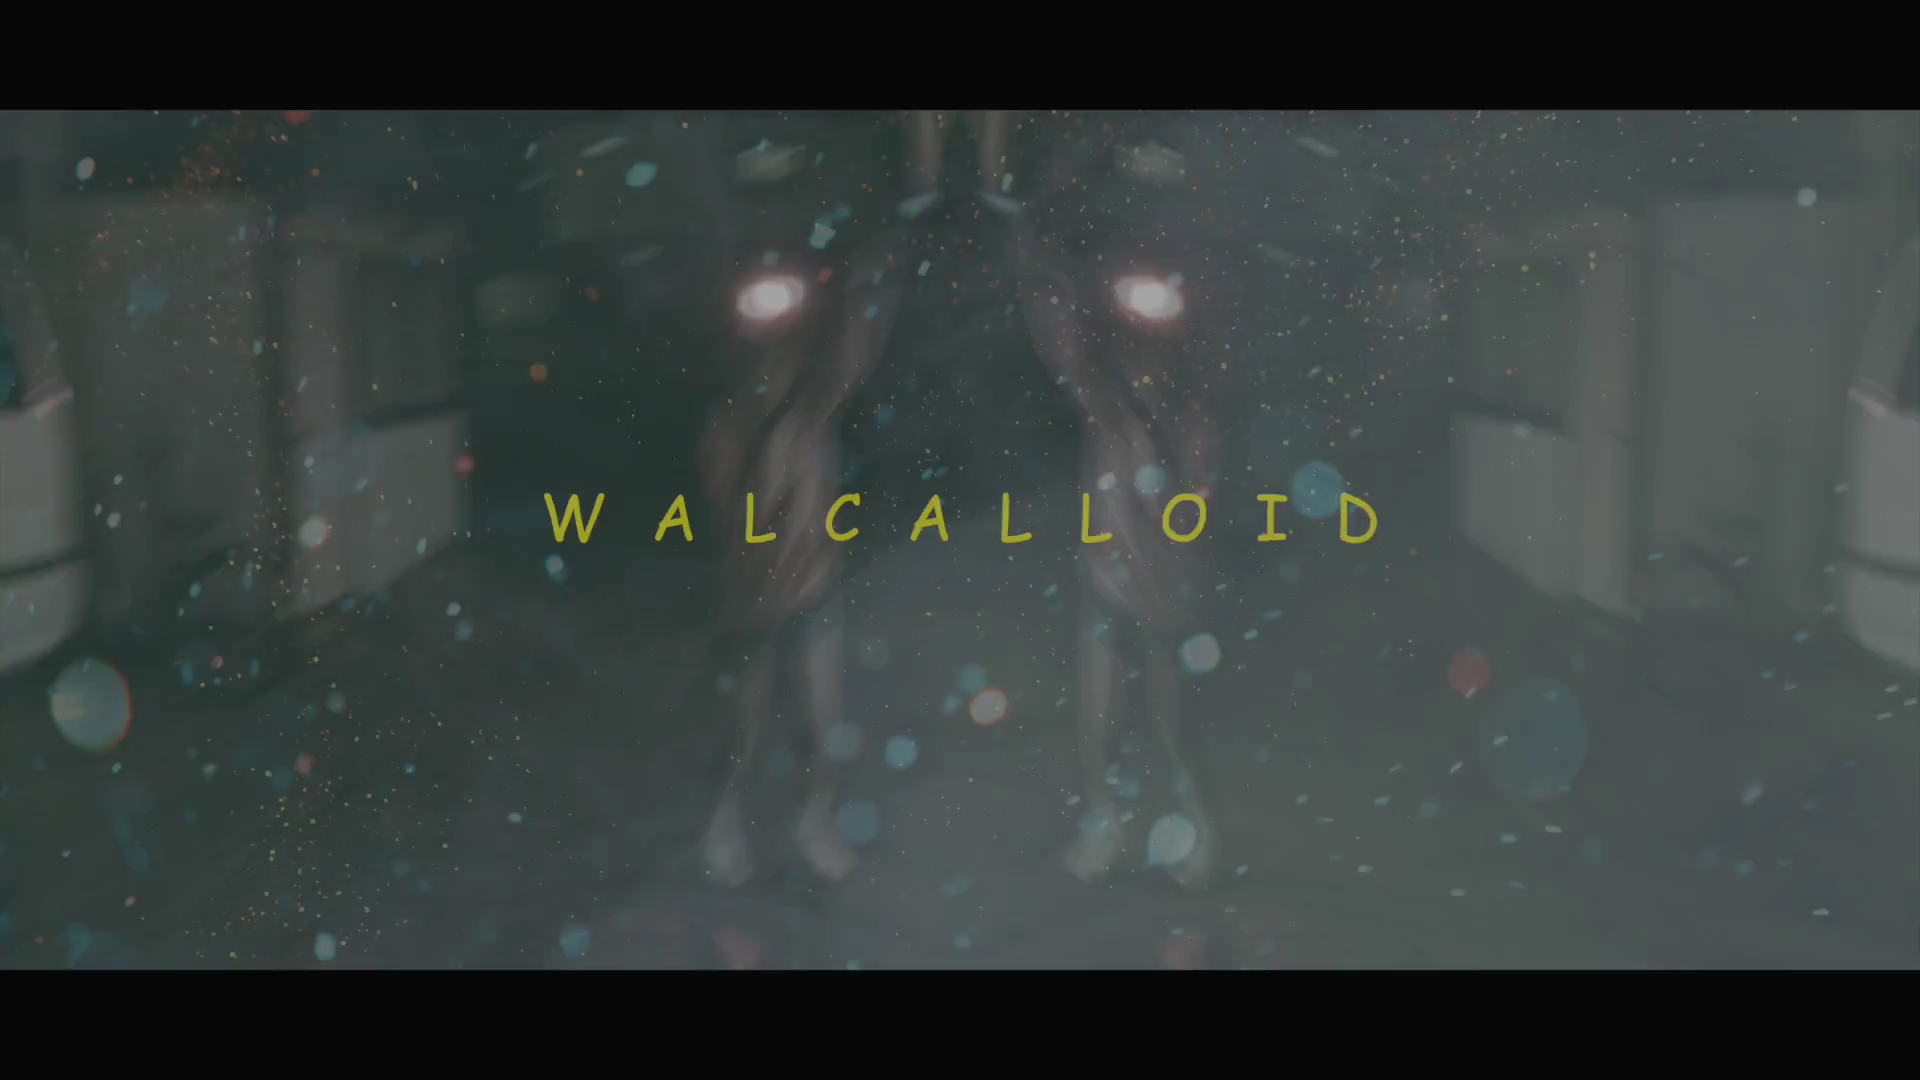 里咲りさ - WALCALLOID (Risa Satosaki - WALCALLOID).mp4_20160316_213106.406